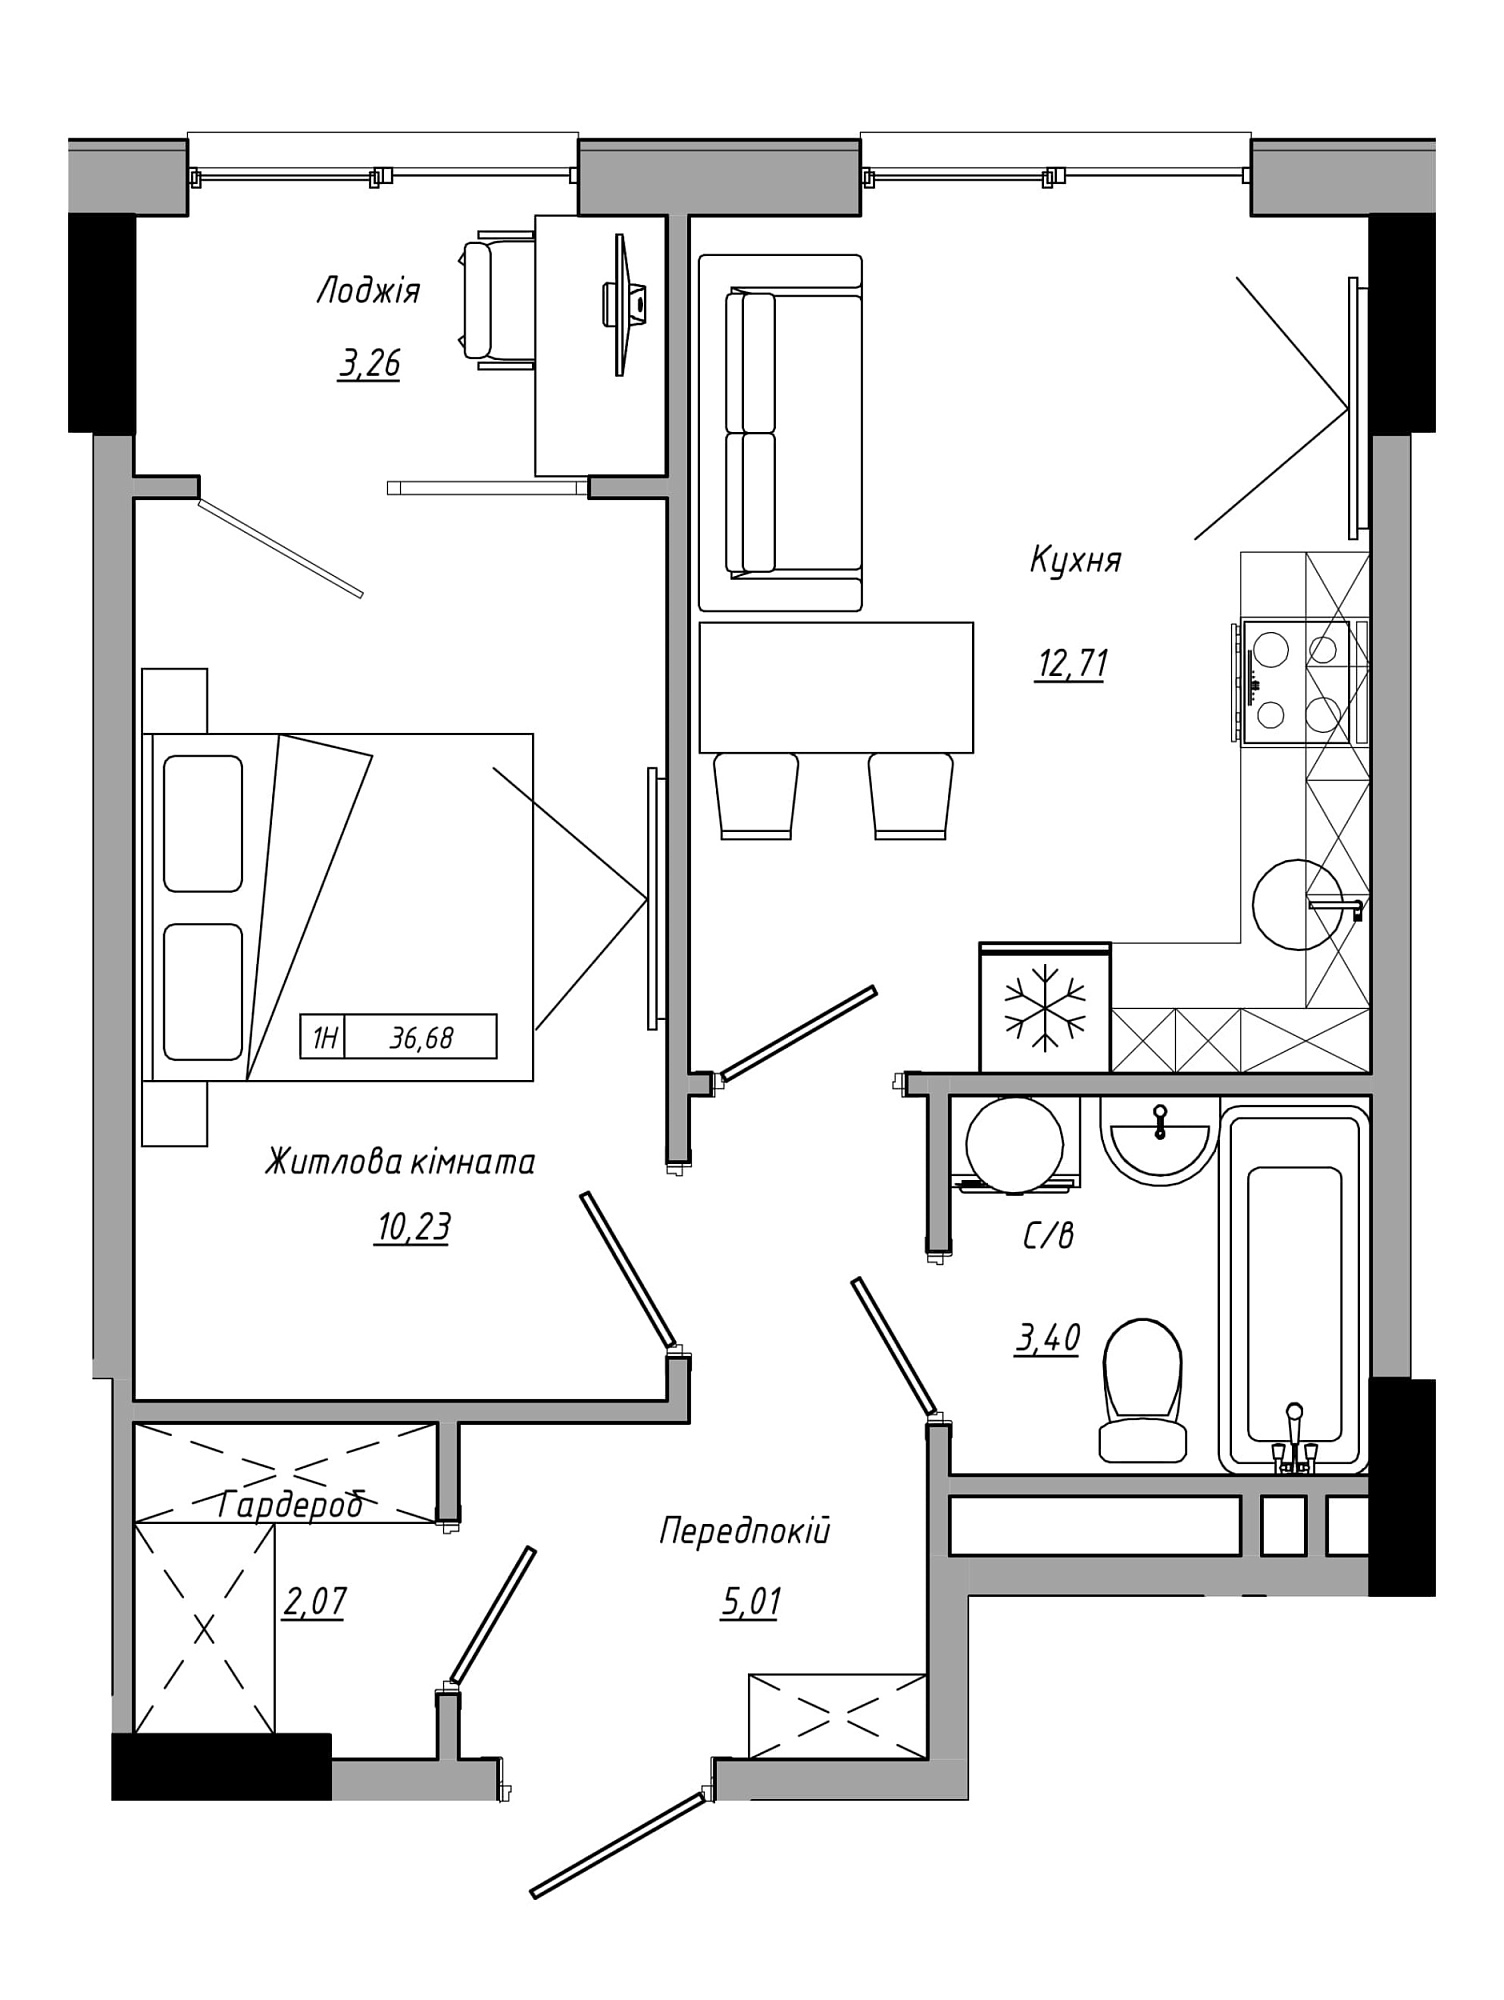 Планировка 1-к квартира площей 36.68м2, AB-21-10/00016.